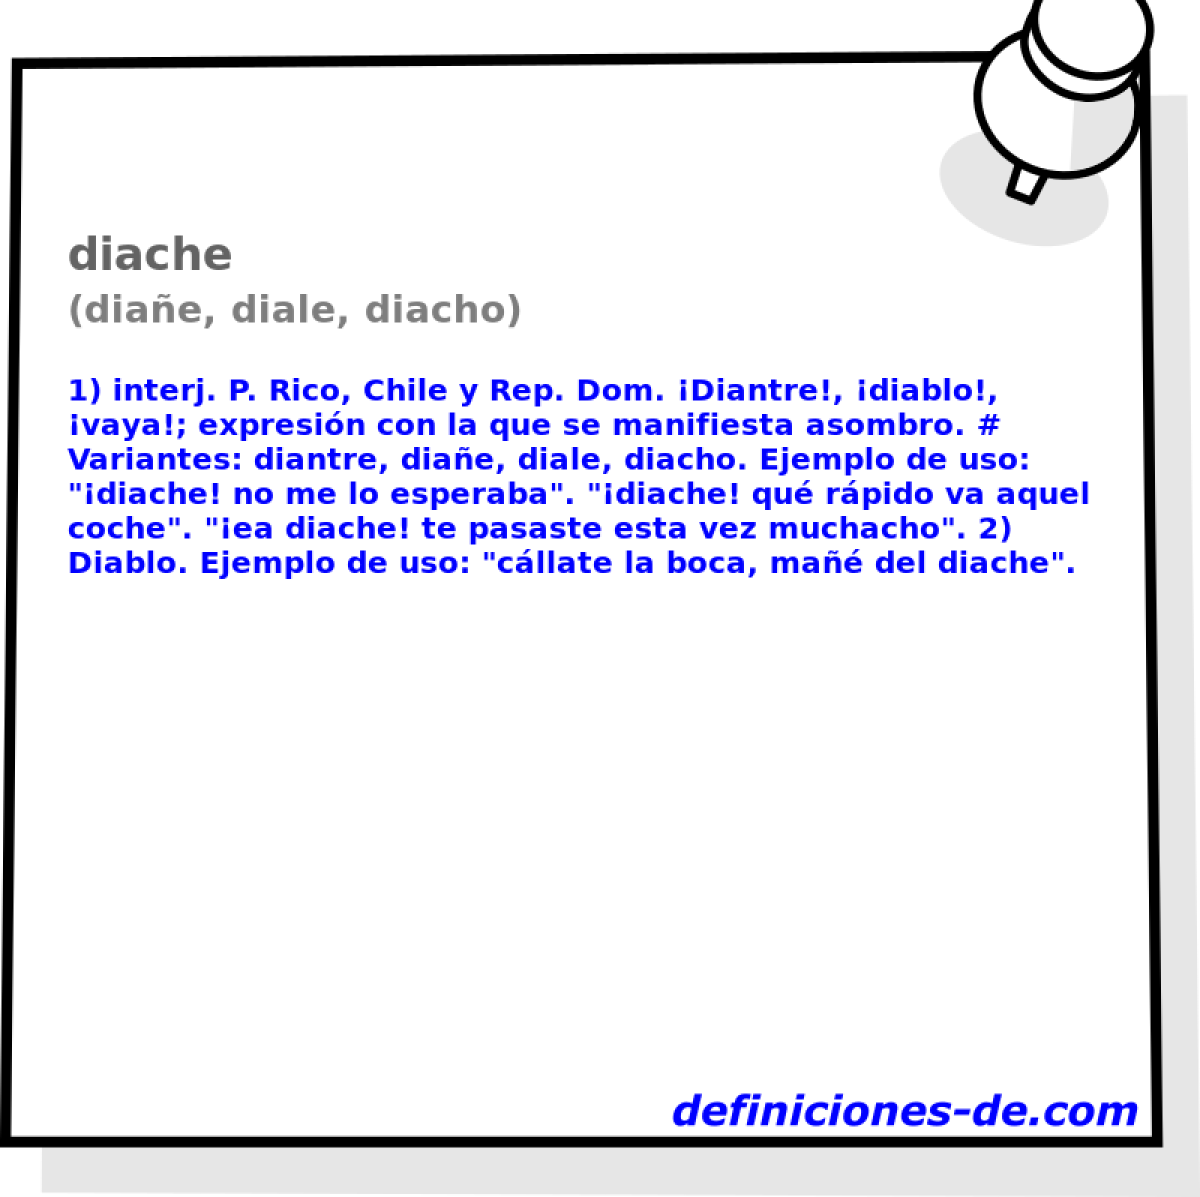 diache (diae, diale, diacho)